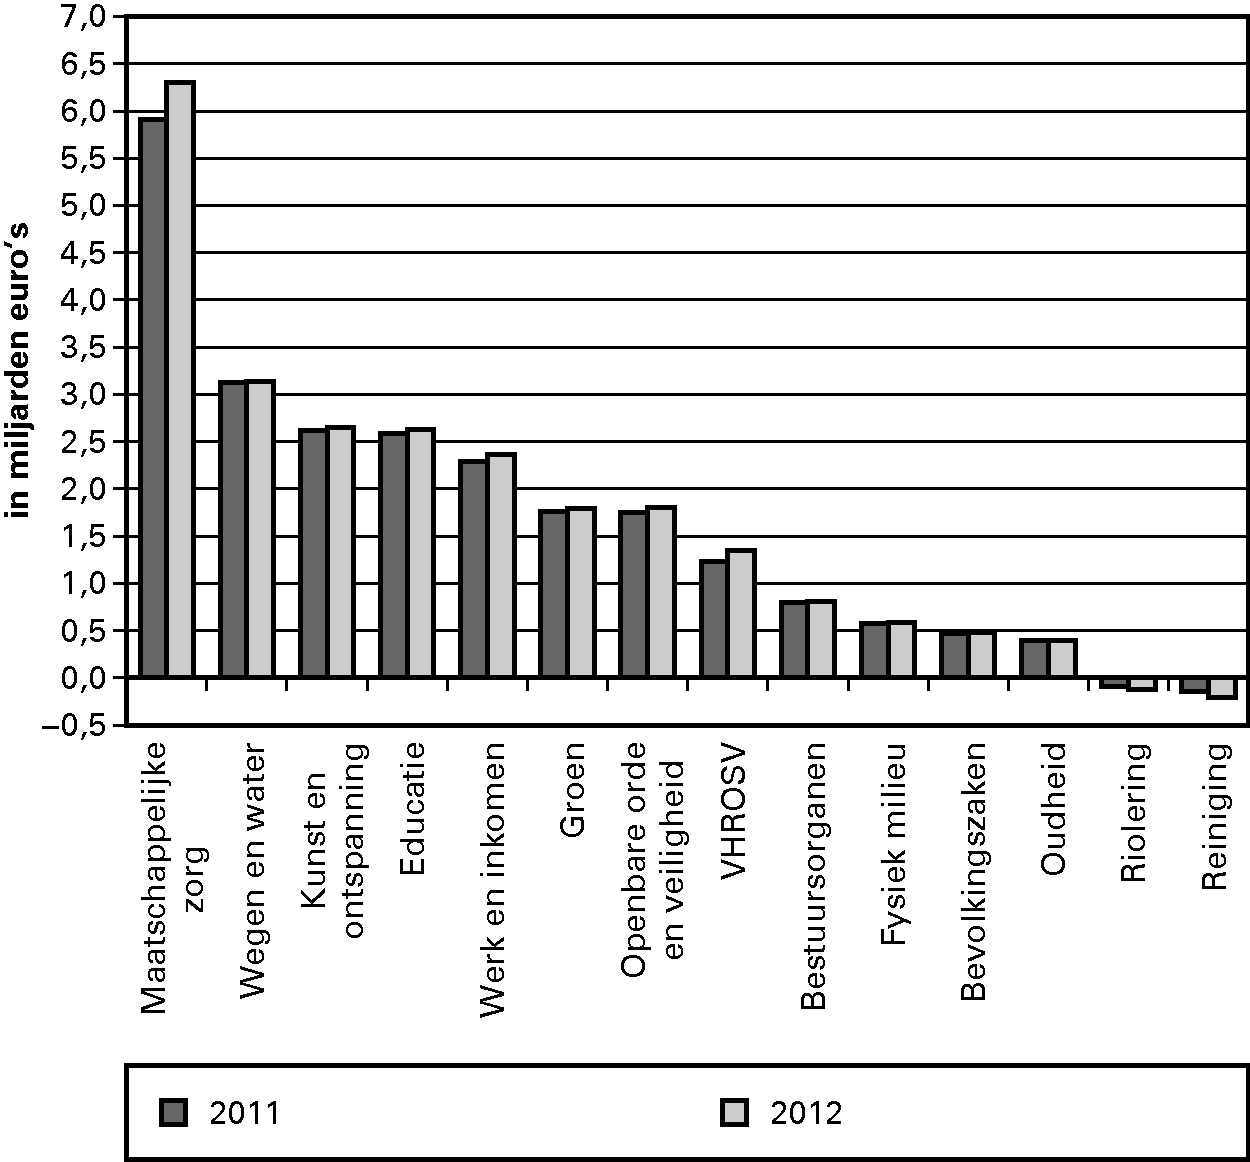 Figuur 3.2. Netto-uitgaven per cluster voor de jaren 2011 en 2012 (miljarden euro's, alle gemeenten)